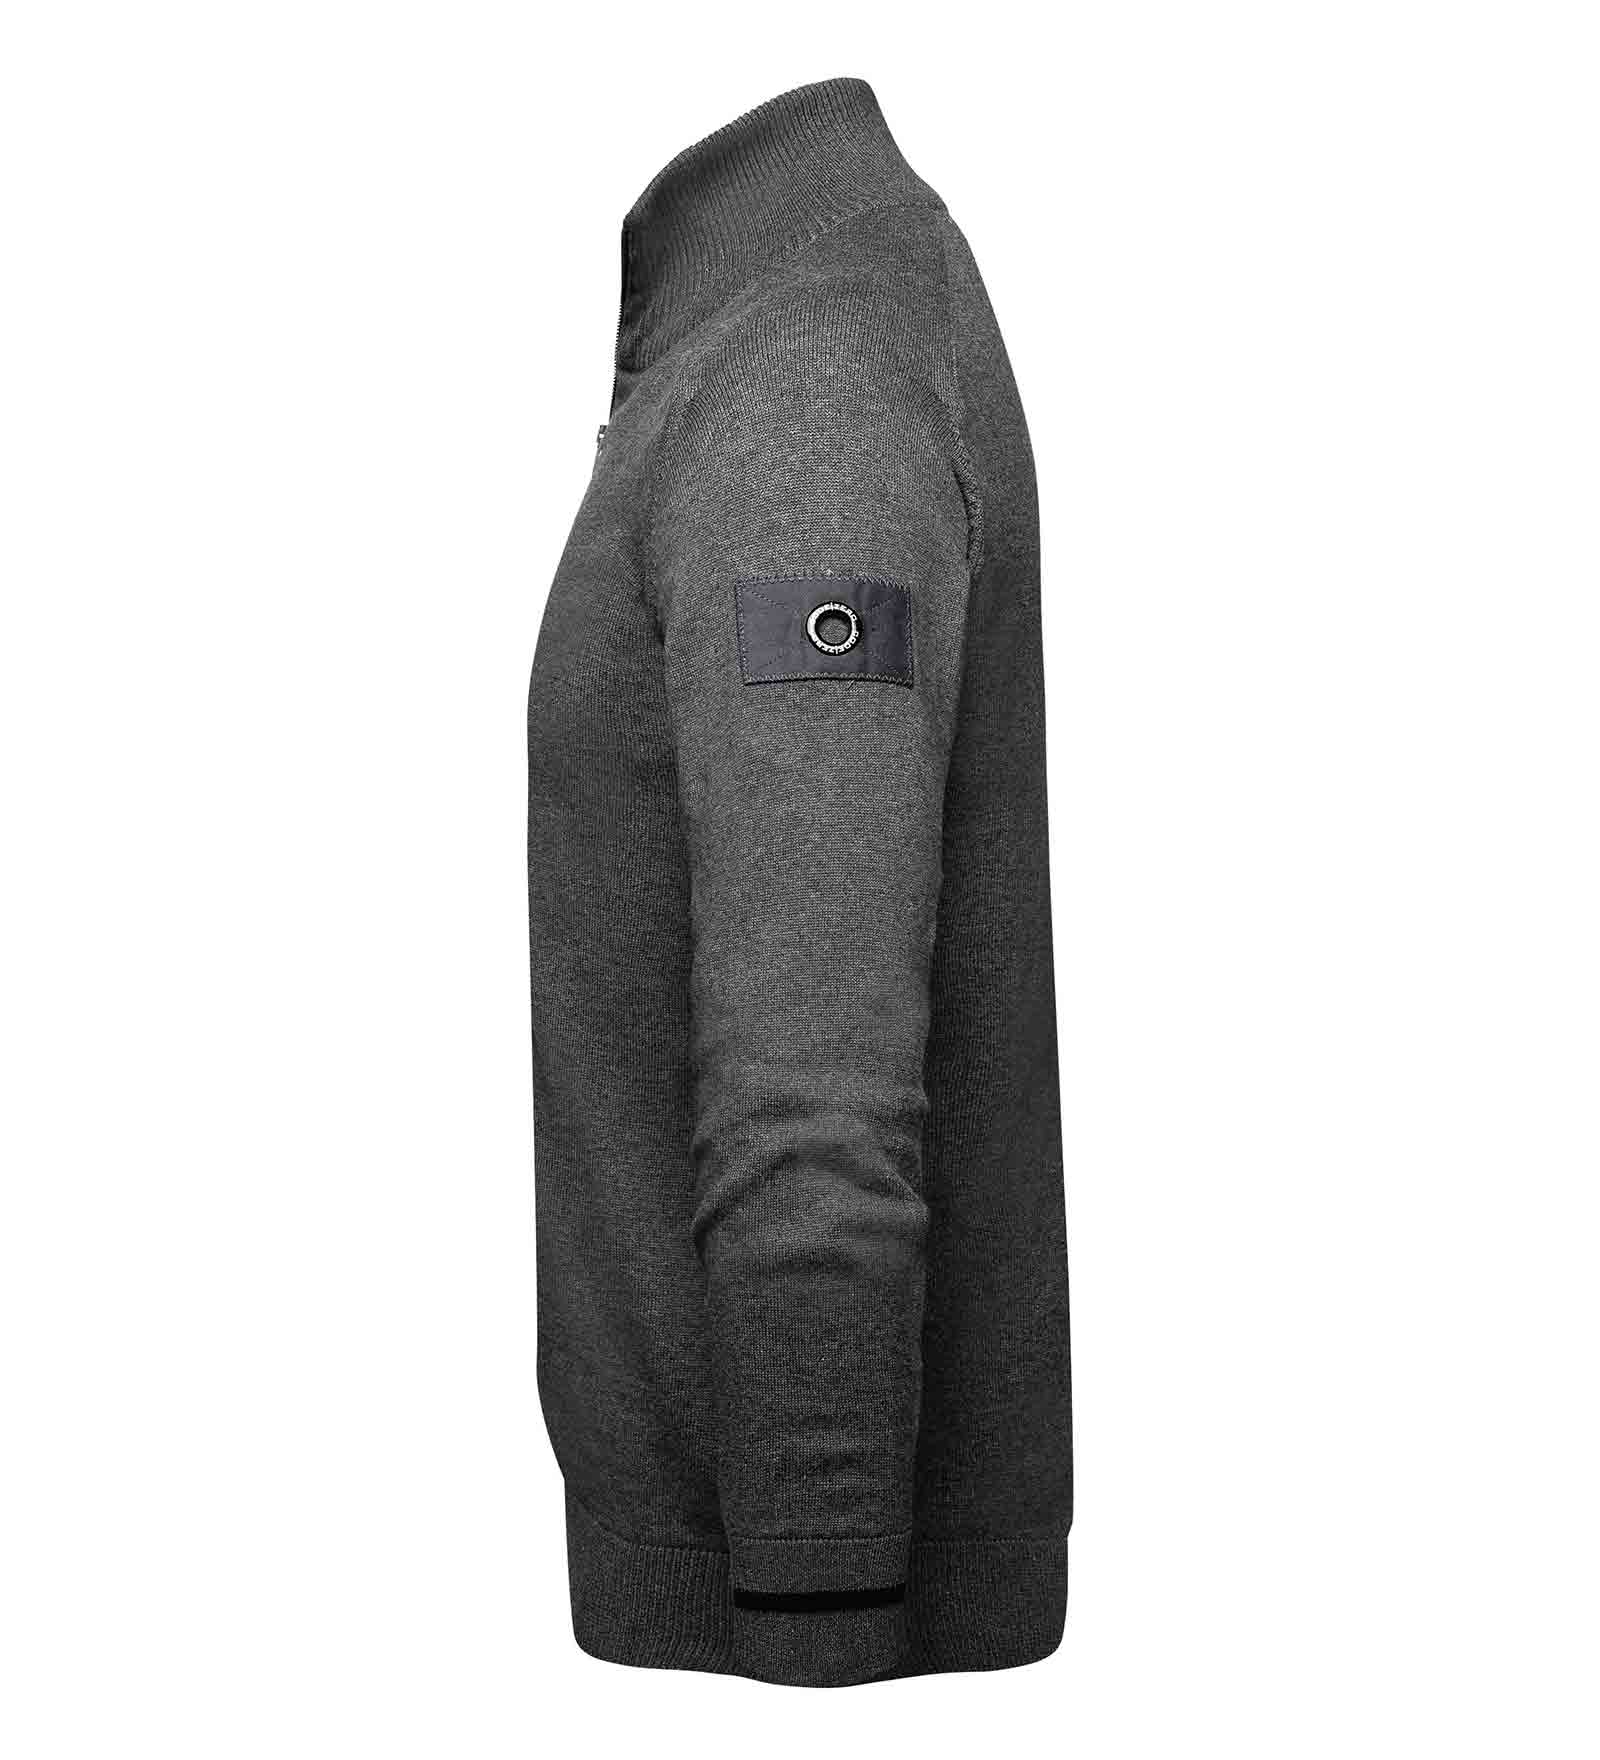 Grey jumper details 